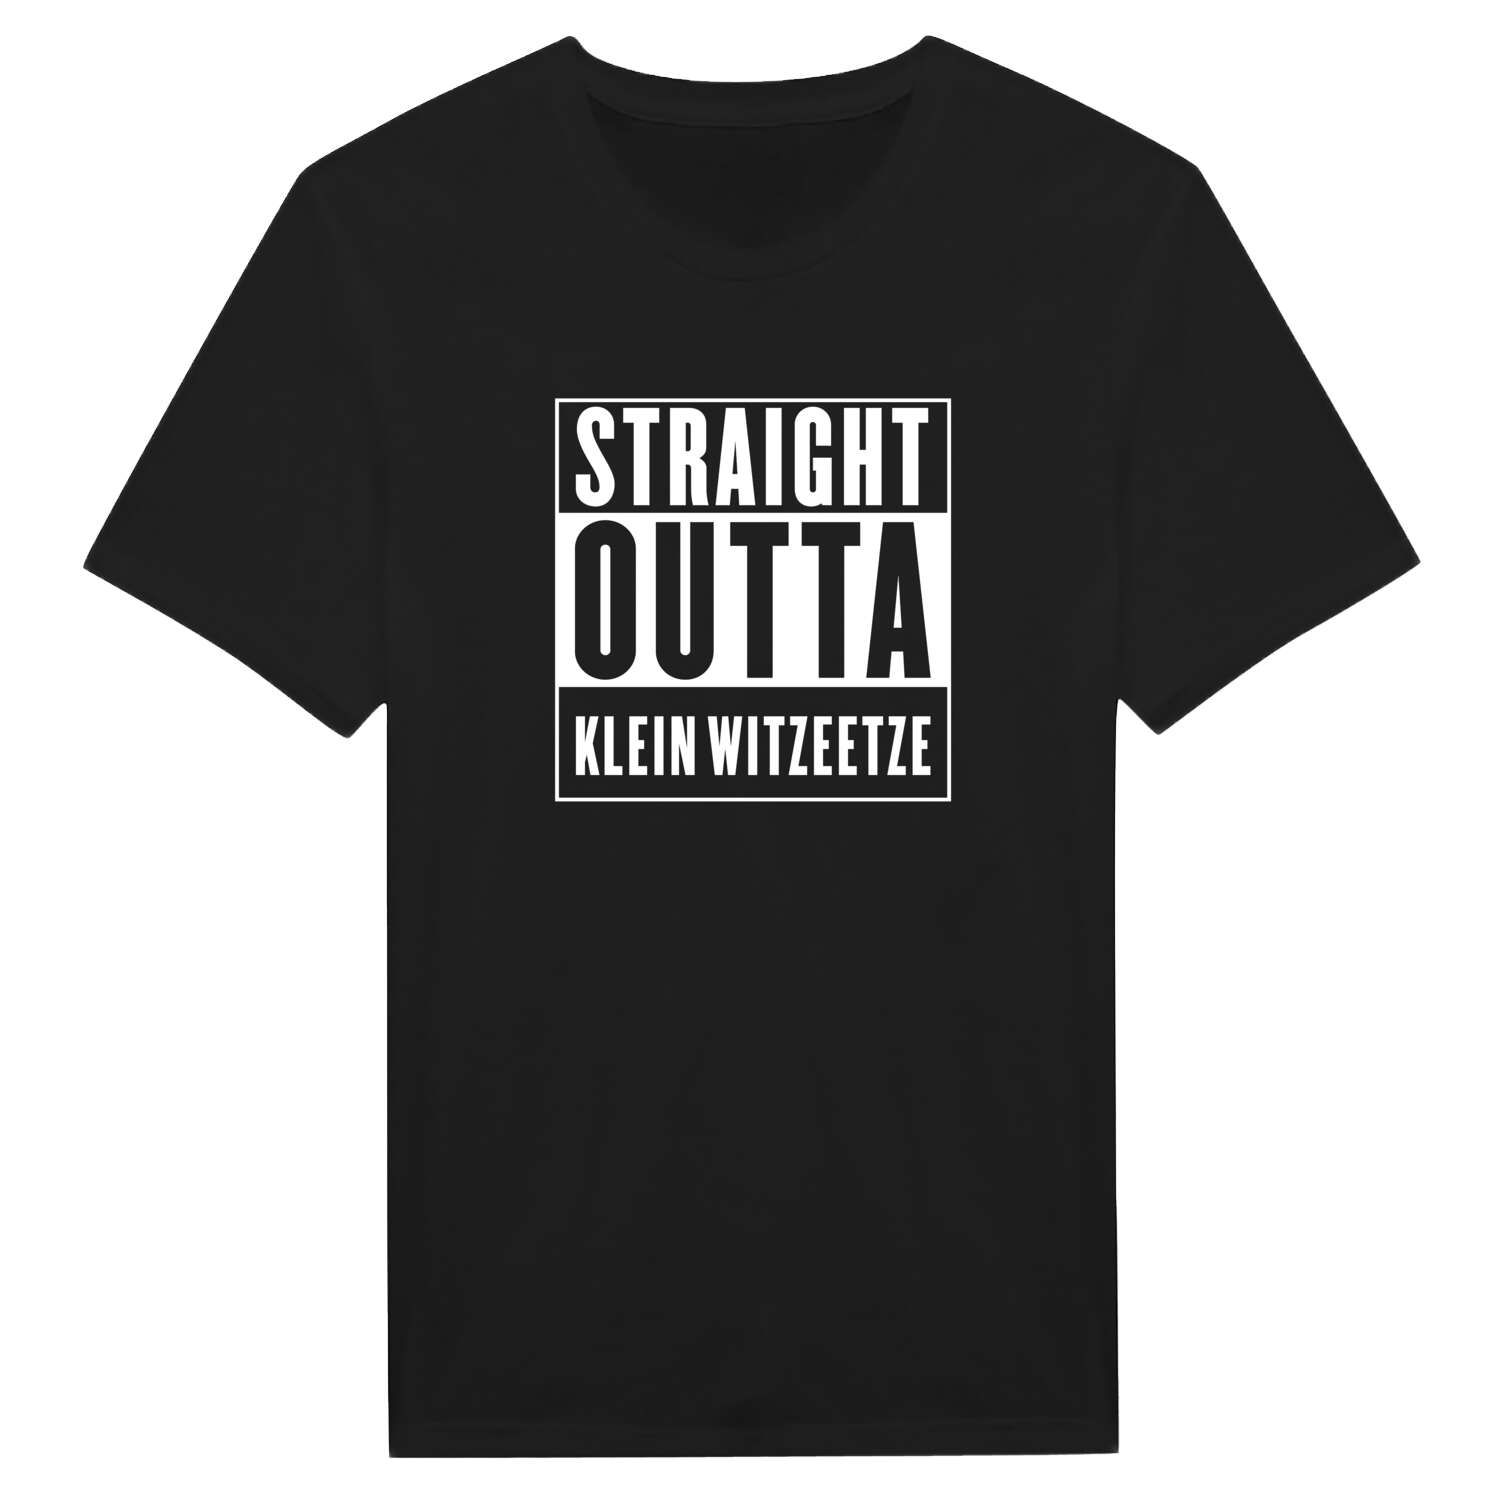 Klein Witzeetze T-Shirt »Straight Outta«